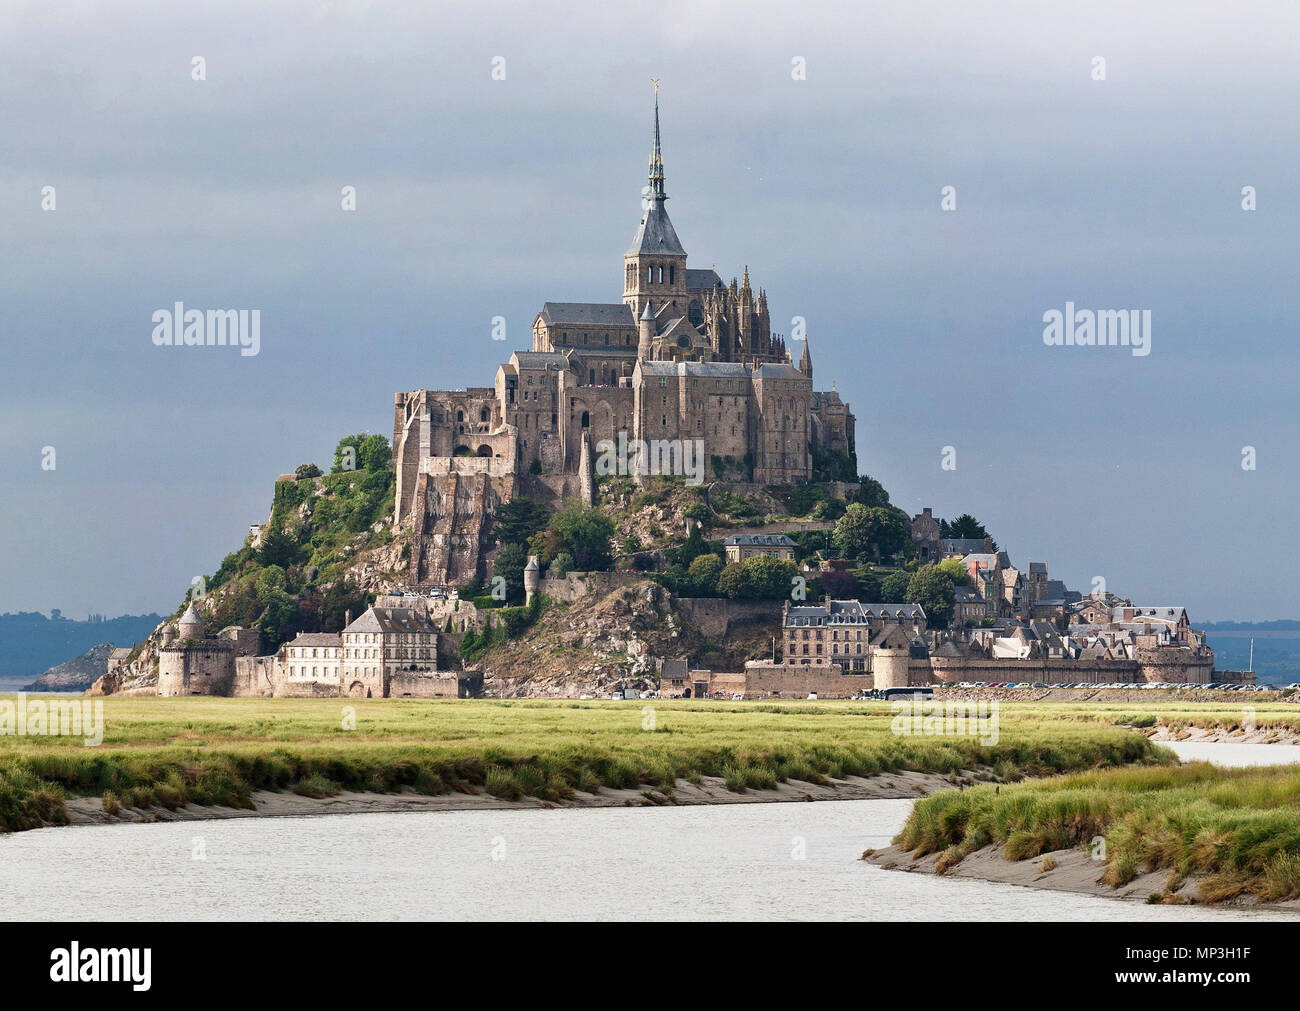 . Inglese: Mont Saint Michel come visto lungo il fiume Couesnon in Normandia, Francia . Il 5 luglio 2011. Diliff 903 Mont St Michel 3, Brittany, Francia - Luglio 2011 Foto Stock